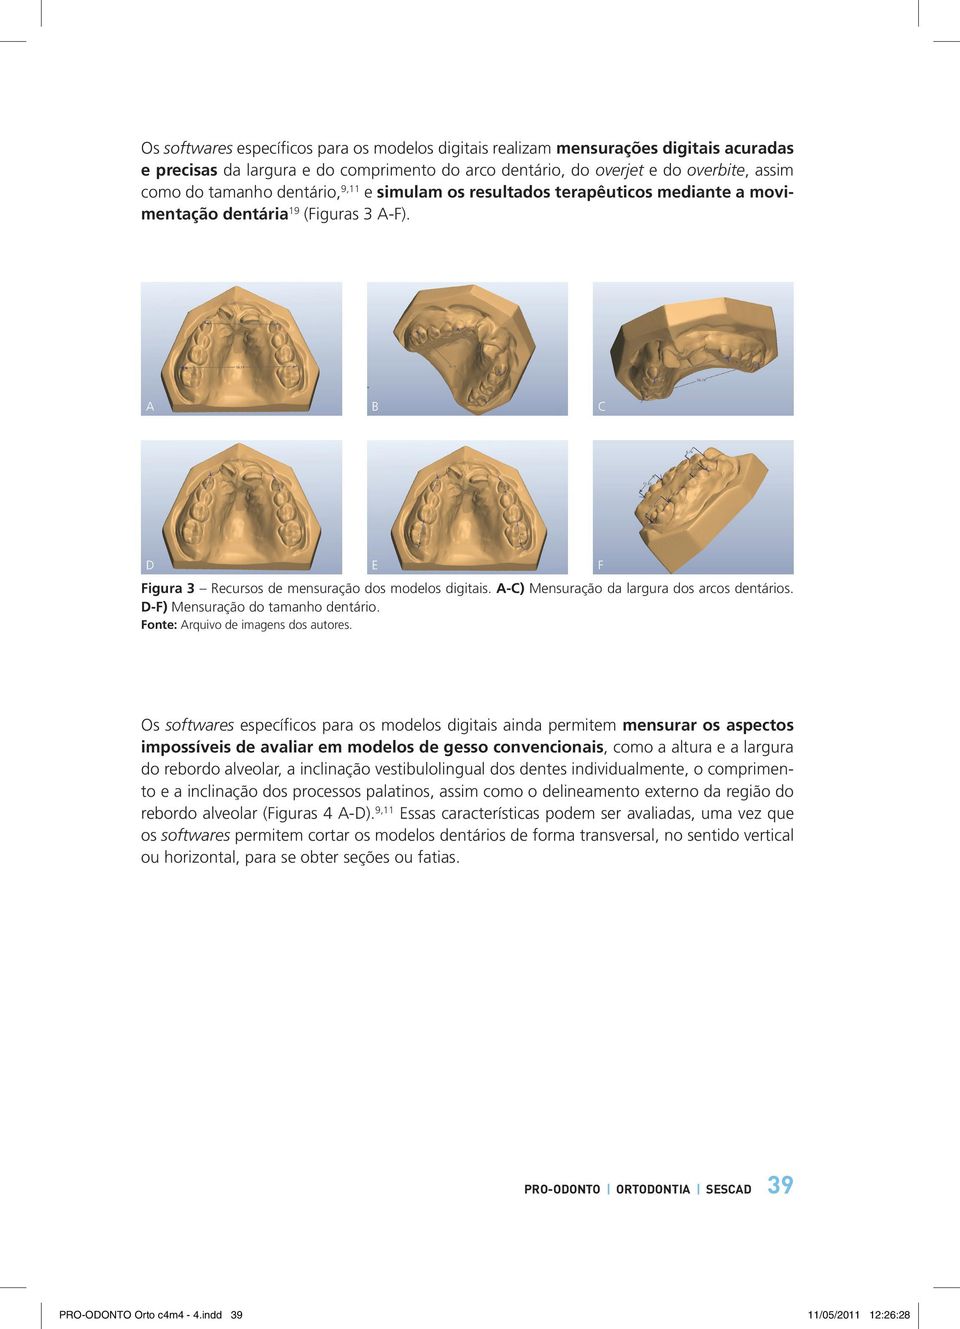 A-C) Mensuração da largura dos arcos dentários. D-F) Mensuração do tamanho dentário. Fonte: Arquivo de imagens dos autores.